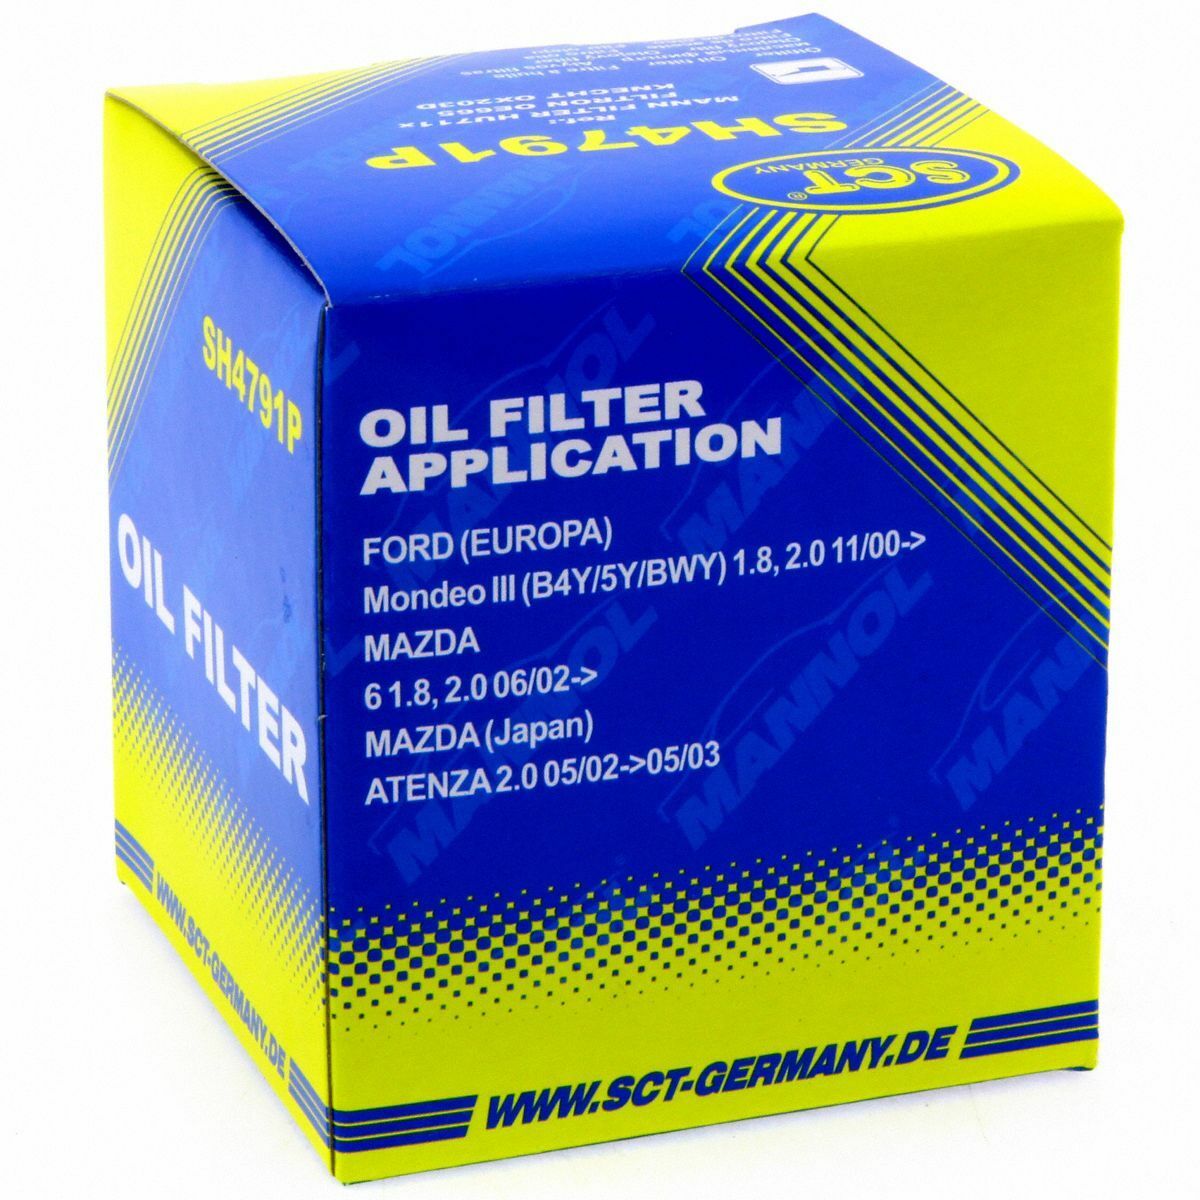 SCT Ölfilter SH 4791 P Filter Motorfilter Servicefilter Patronenfilter Ford Mazda